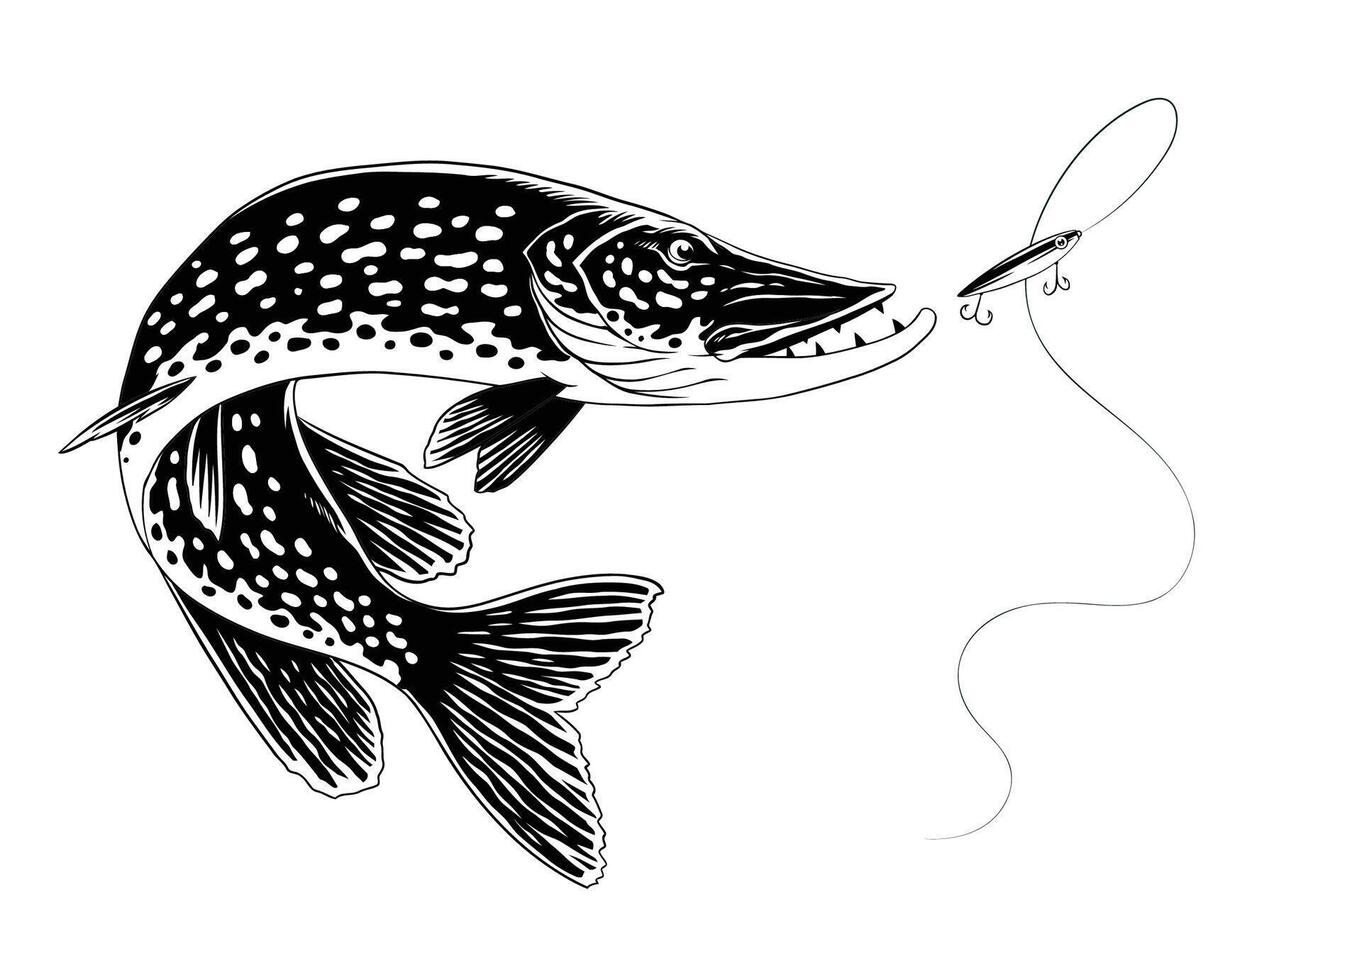 lucio pescado ilustración en Clásico mano dibujado estilo vector